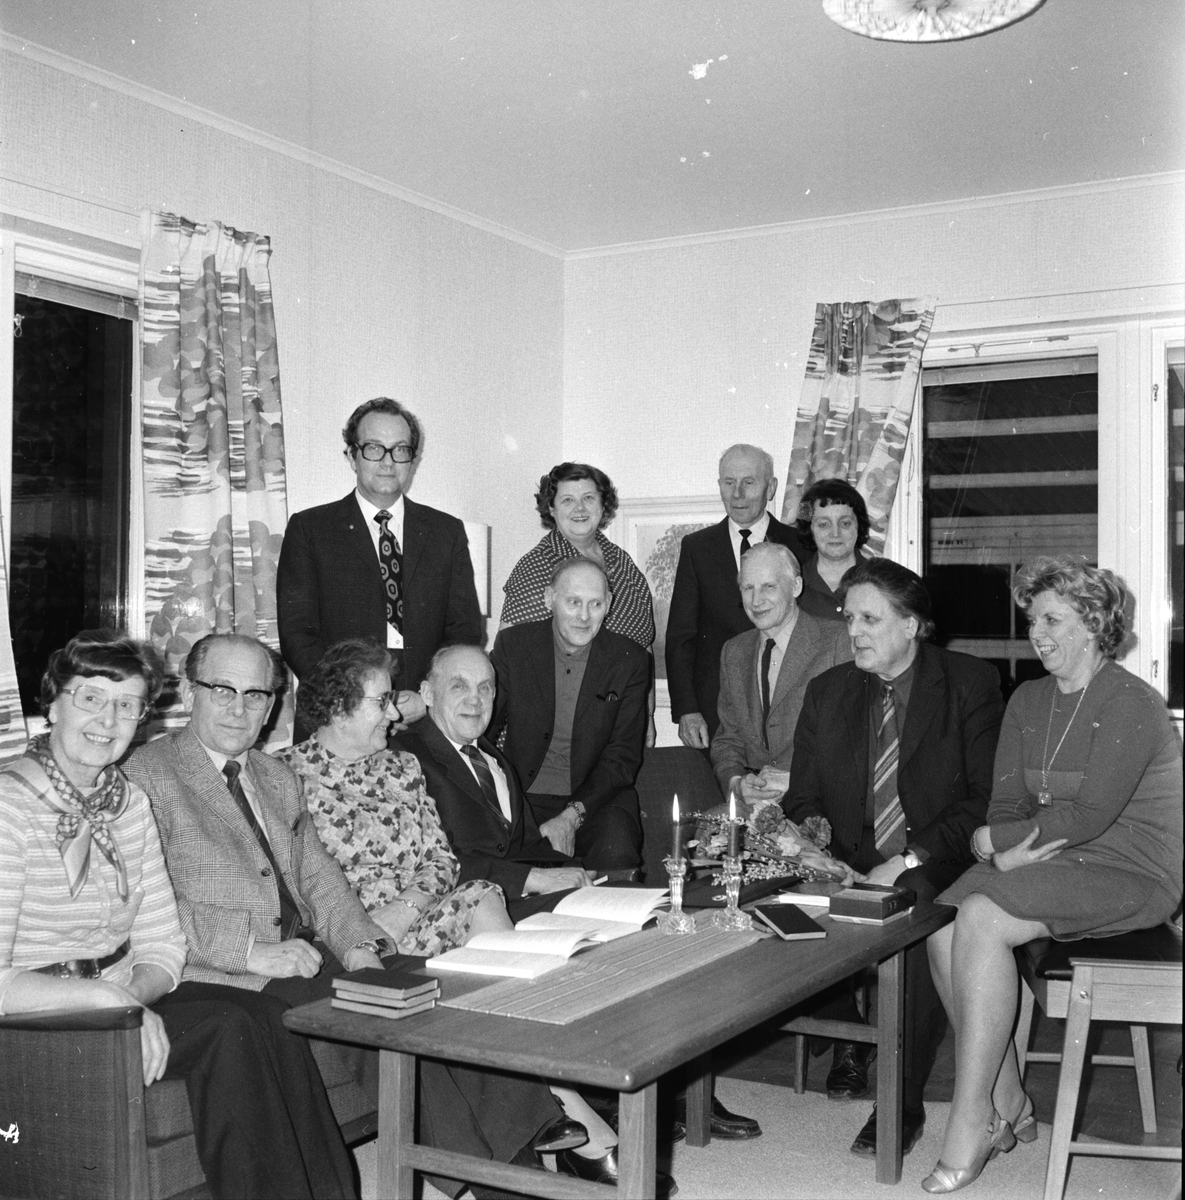 SKS-Cirkel församlingsarbetet.
Februari 1974